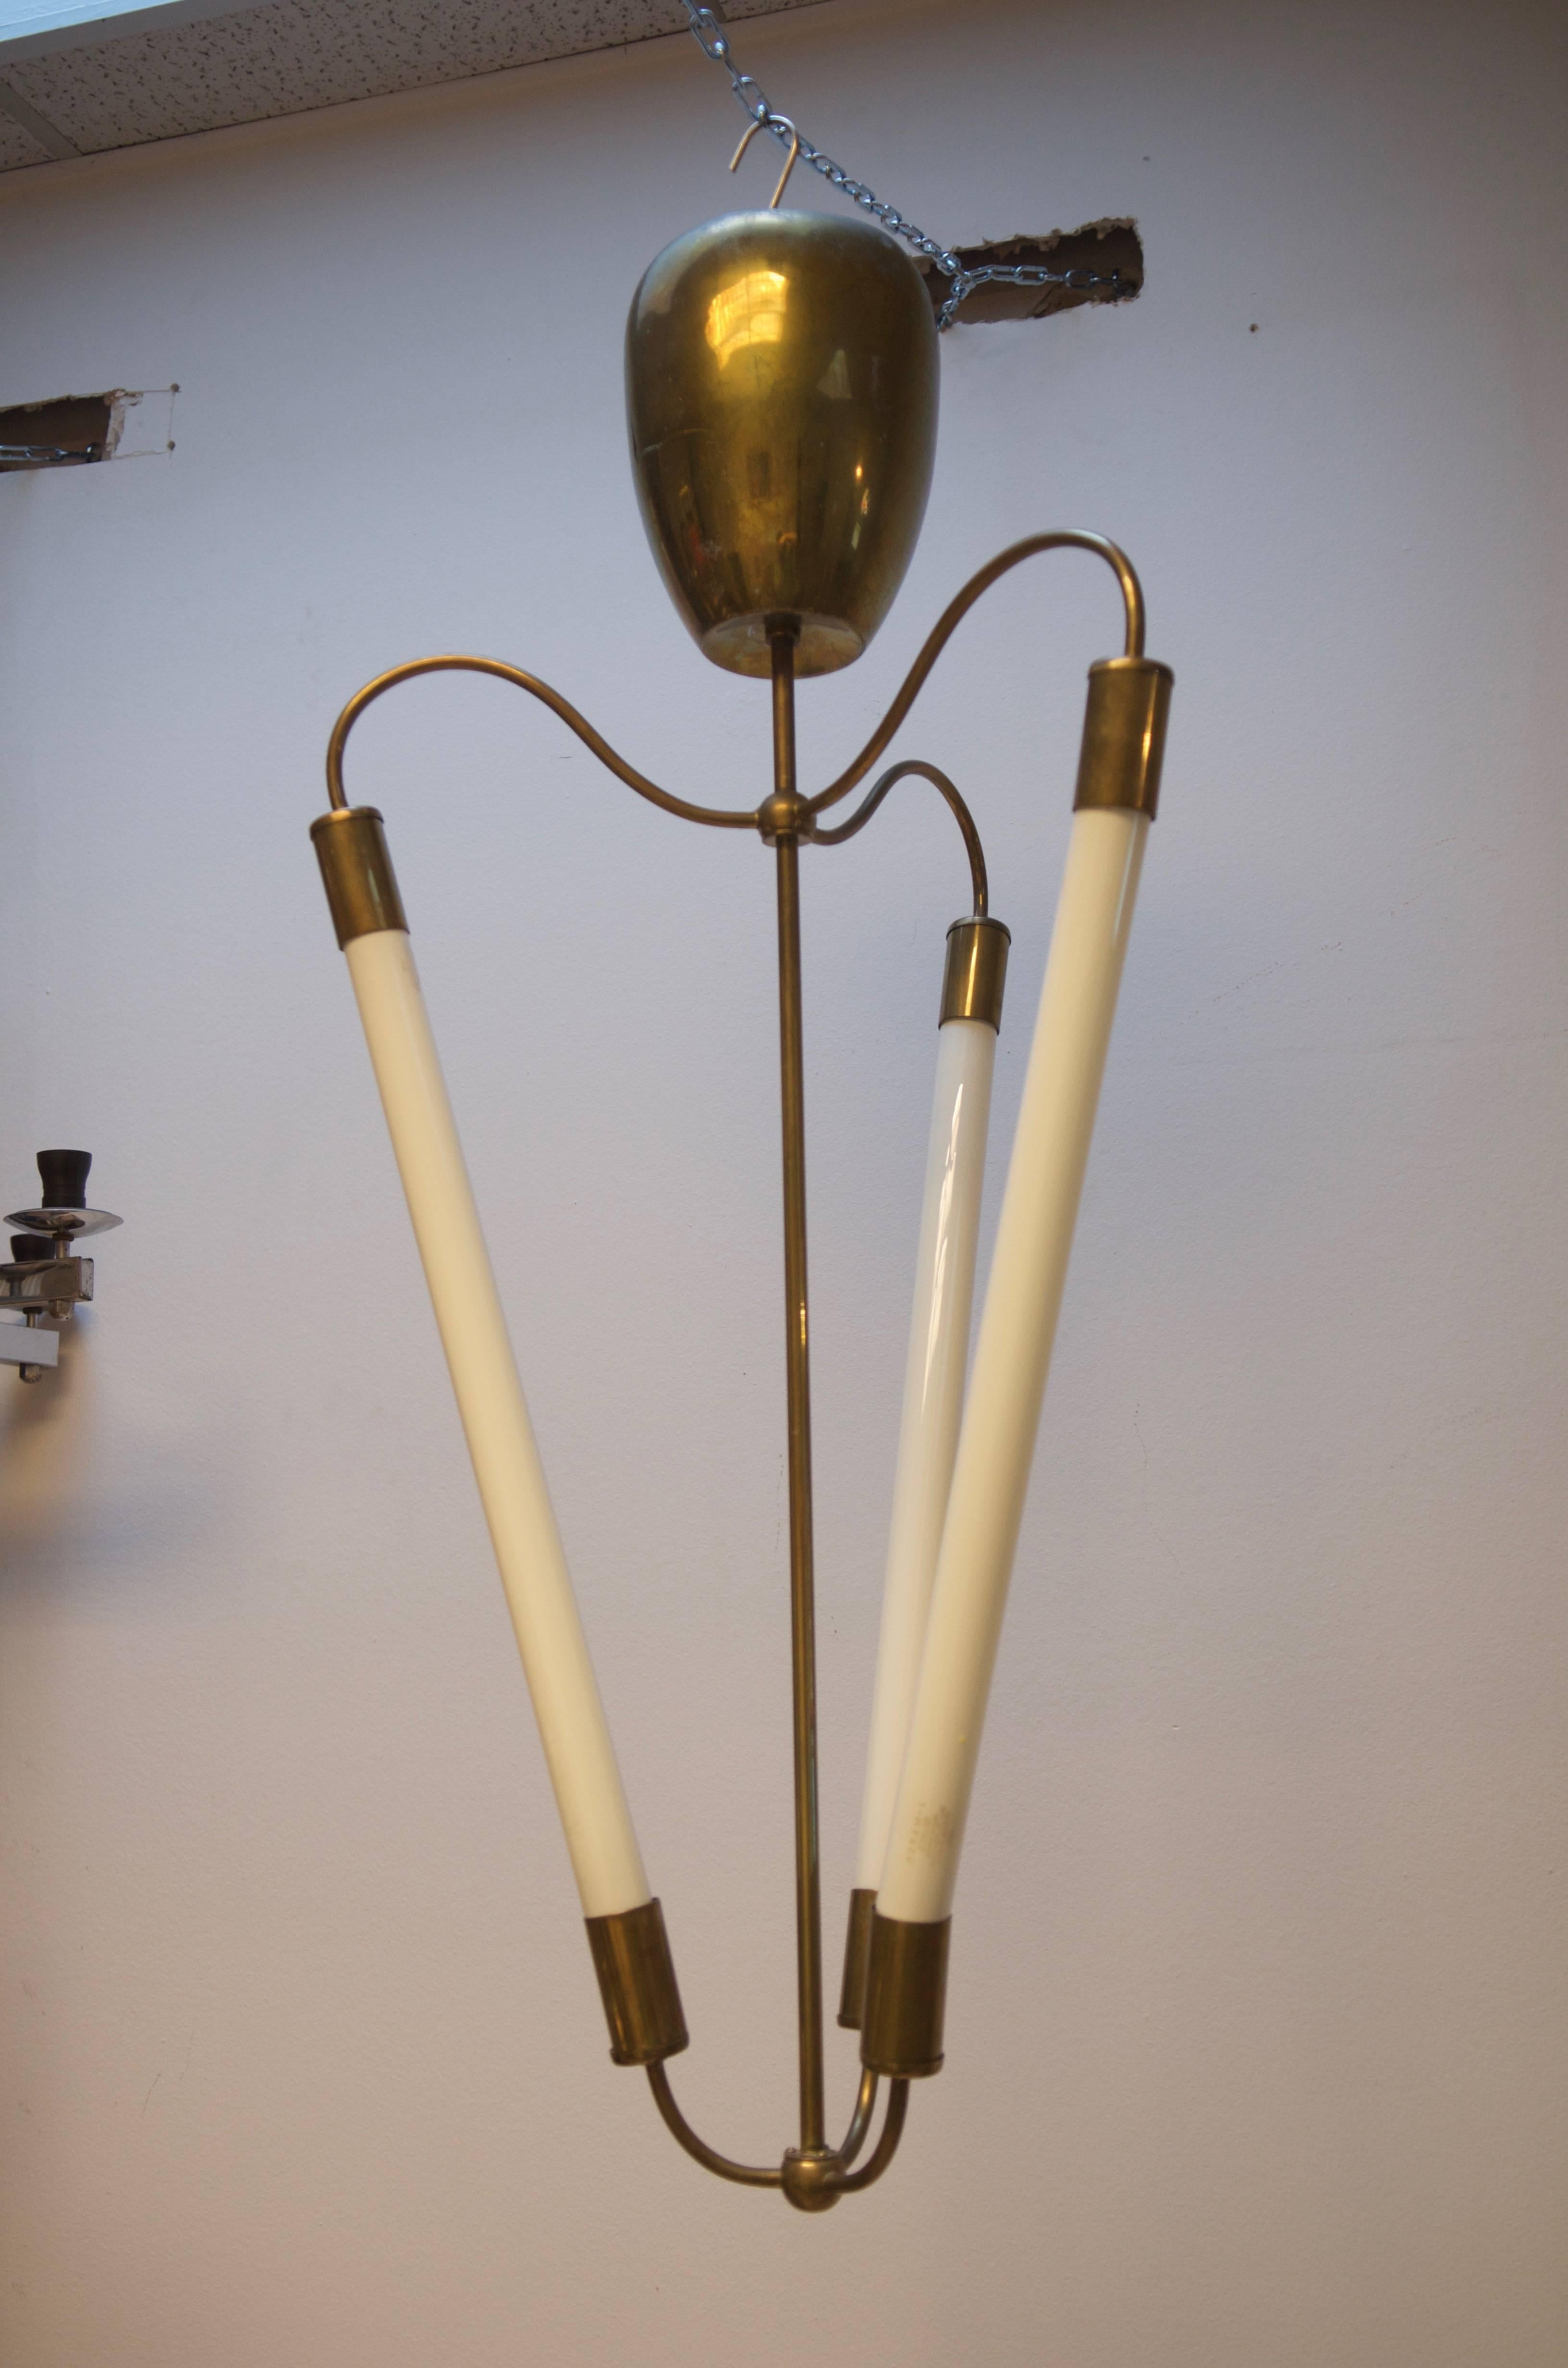 German Bauhaus Tube Light Chandelier Attributed to Kaiser Leuchten